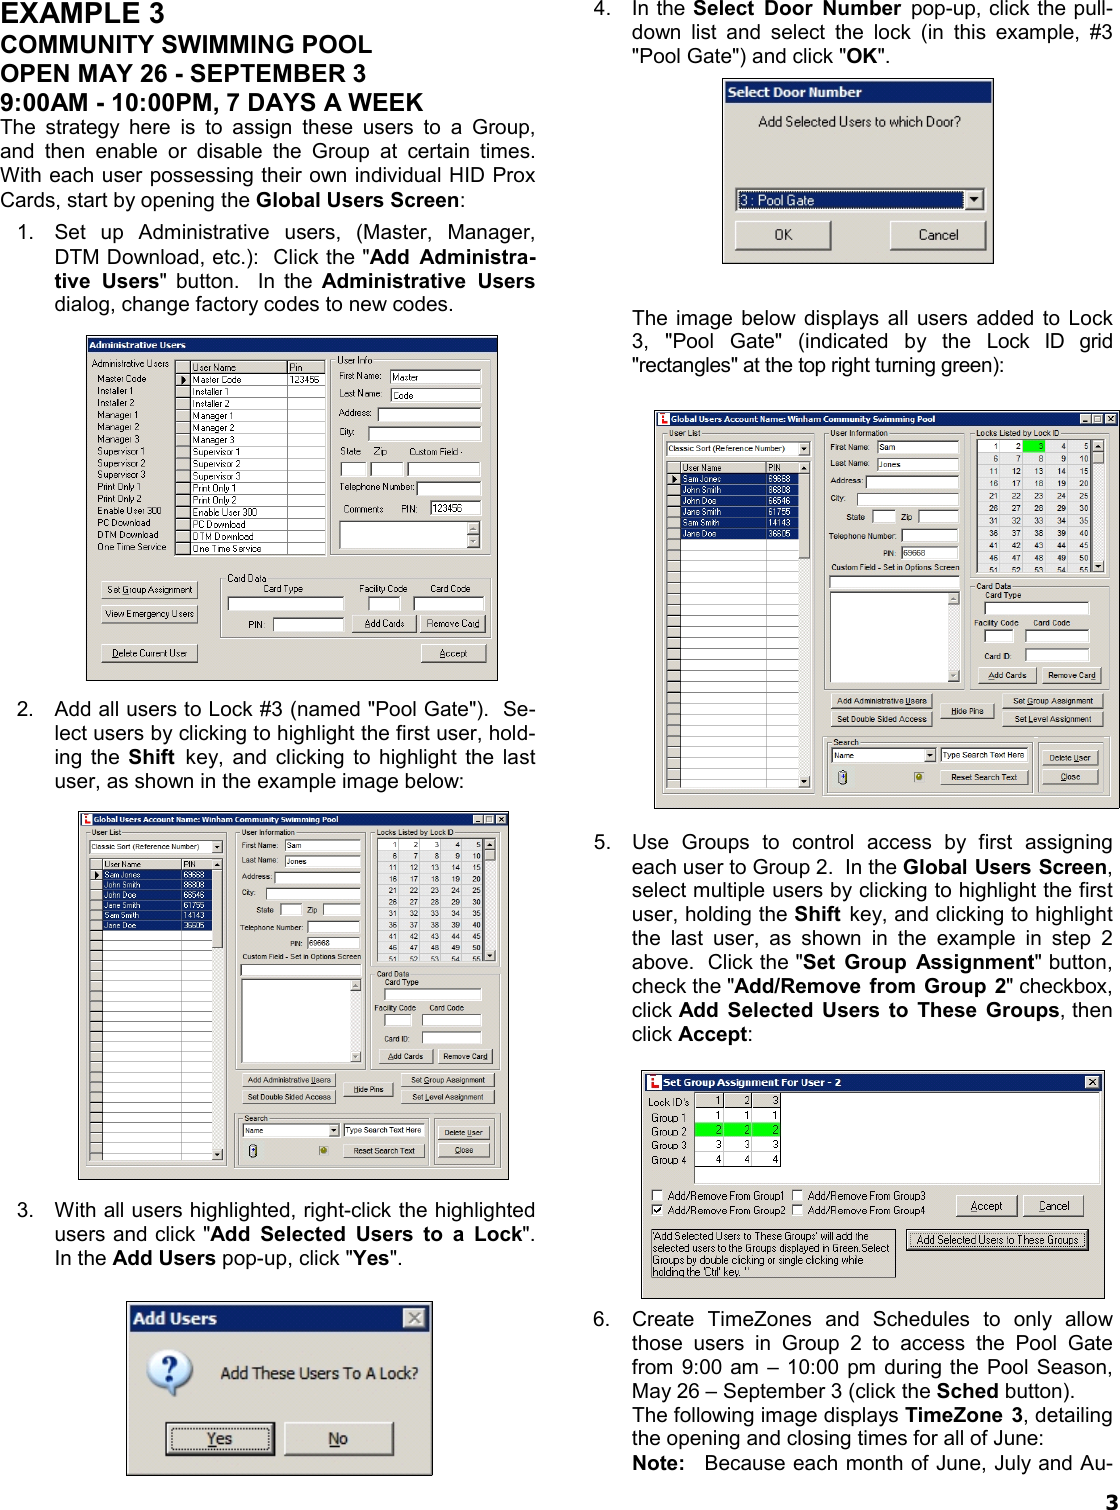 Page 3 of 8 - Alarm Lock DL-Wind_4.1x_TimeZoneSchedScen_WI1633A.05_ DL-Windows Timezone Scheduling Scenario Examples (v4.1x) DL-Wind 4.1x Time Zone Sched Scen WI1633A.05